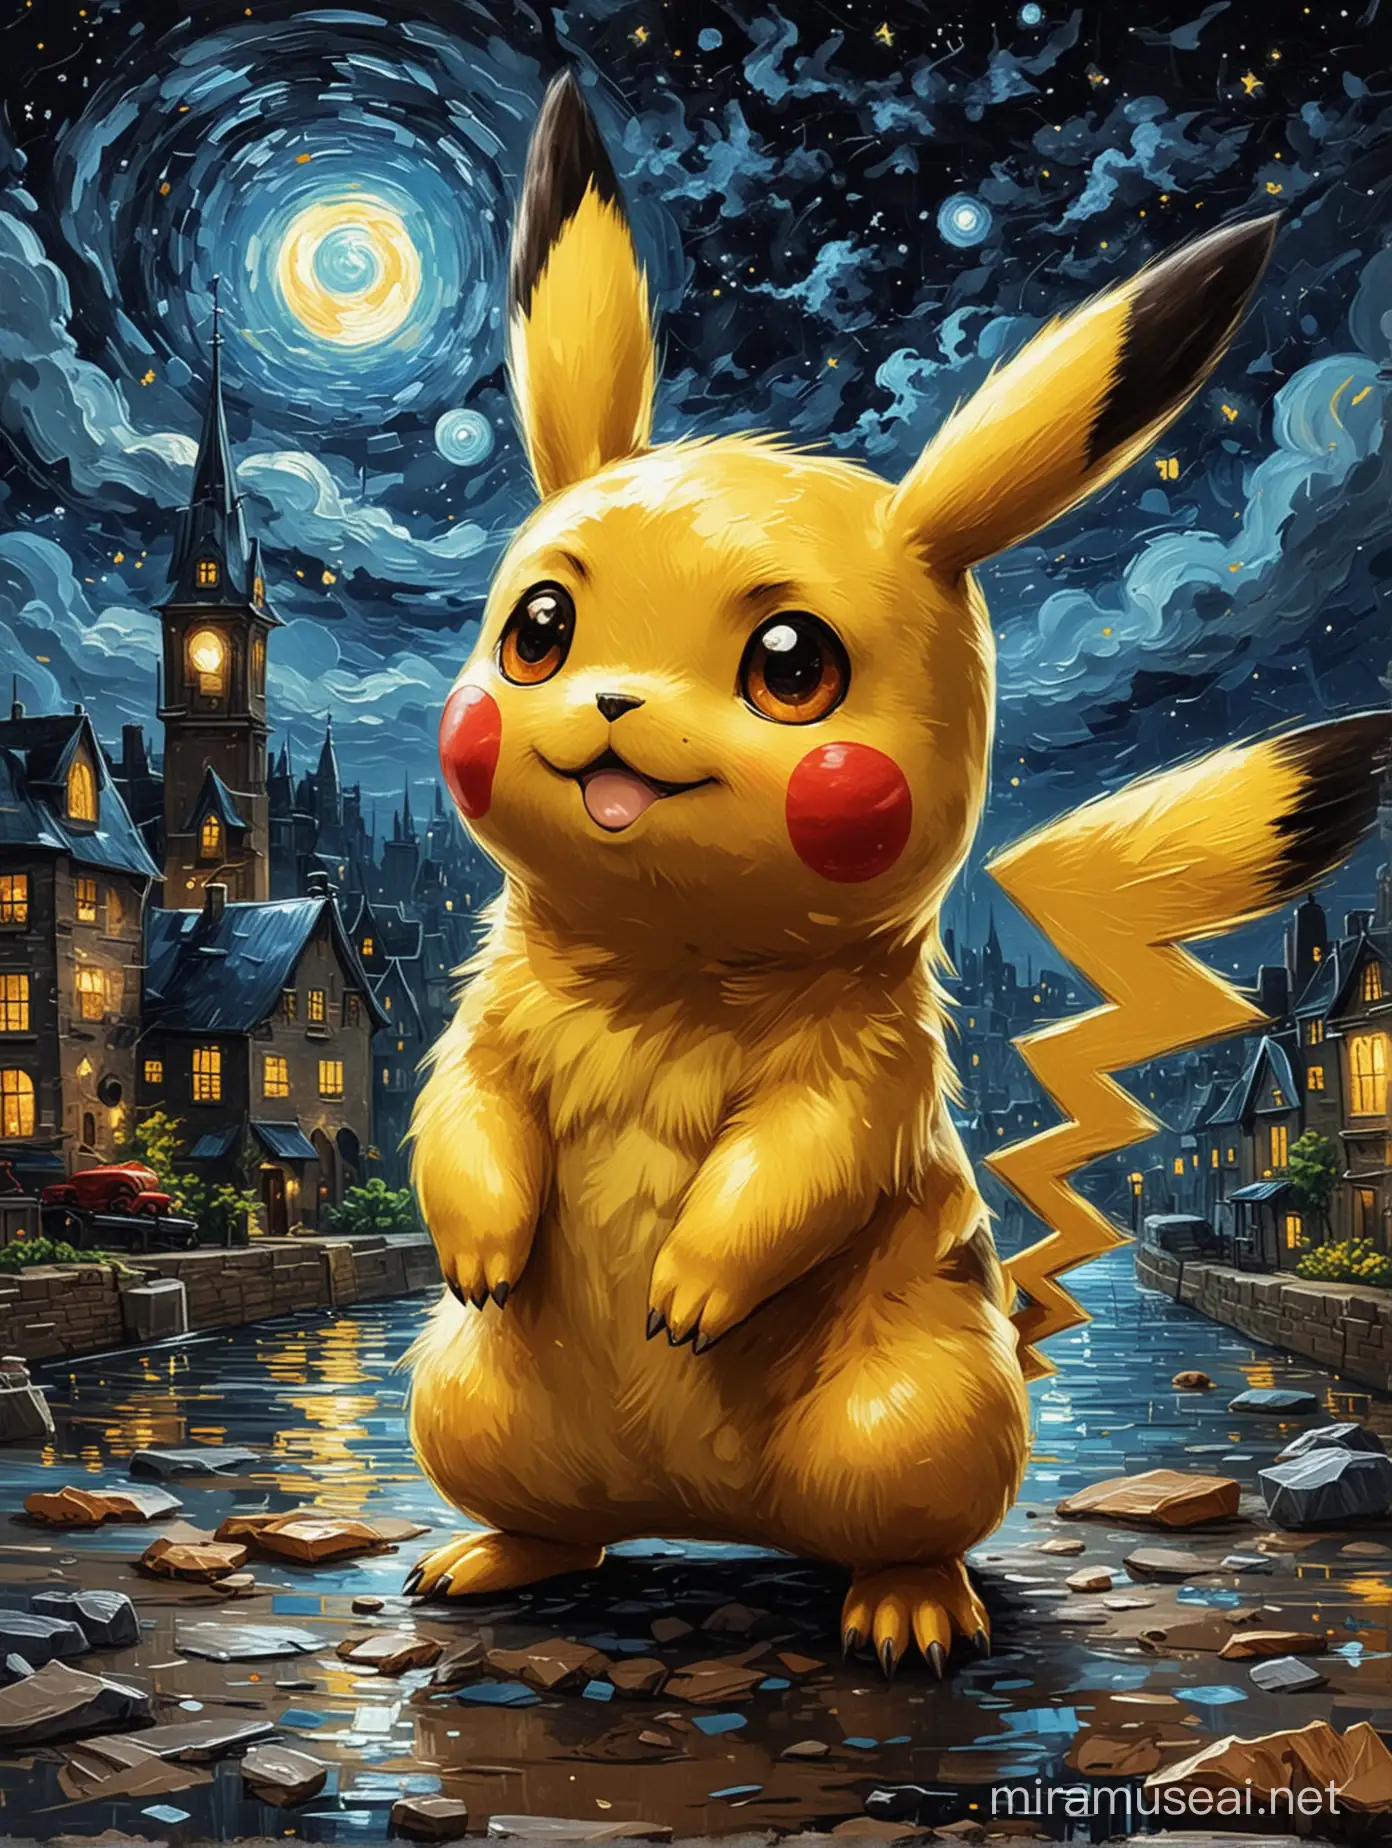 Pokemon painted pikachu in night scène van gogh style 